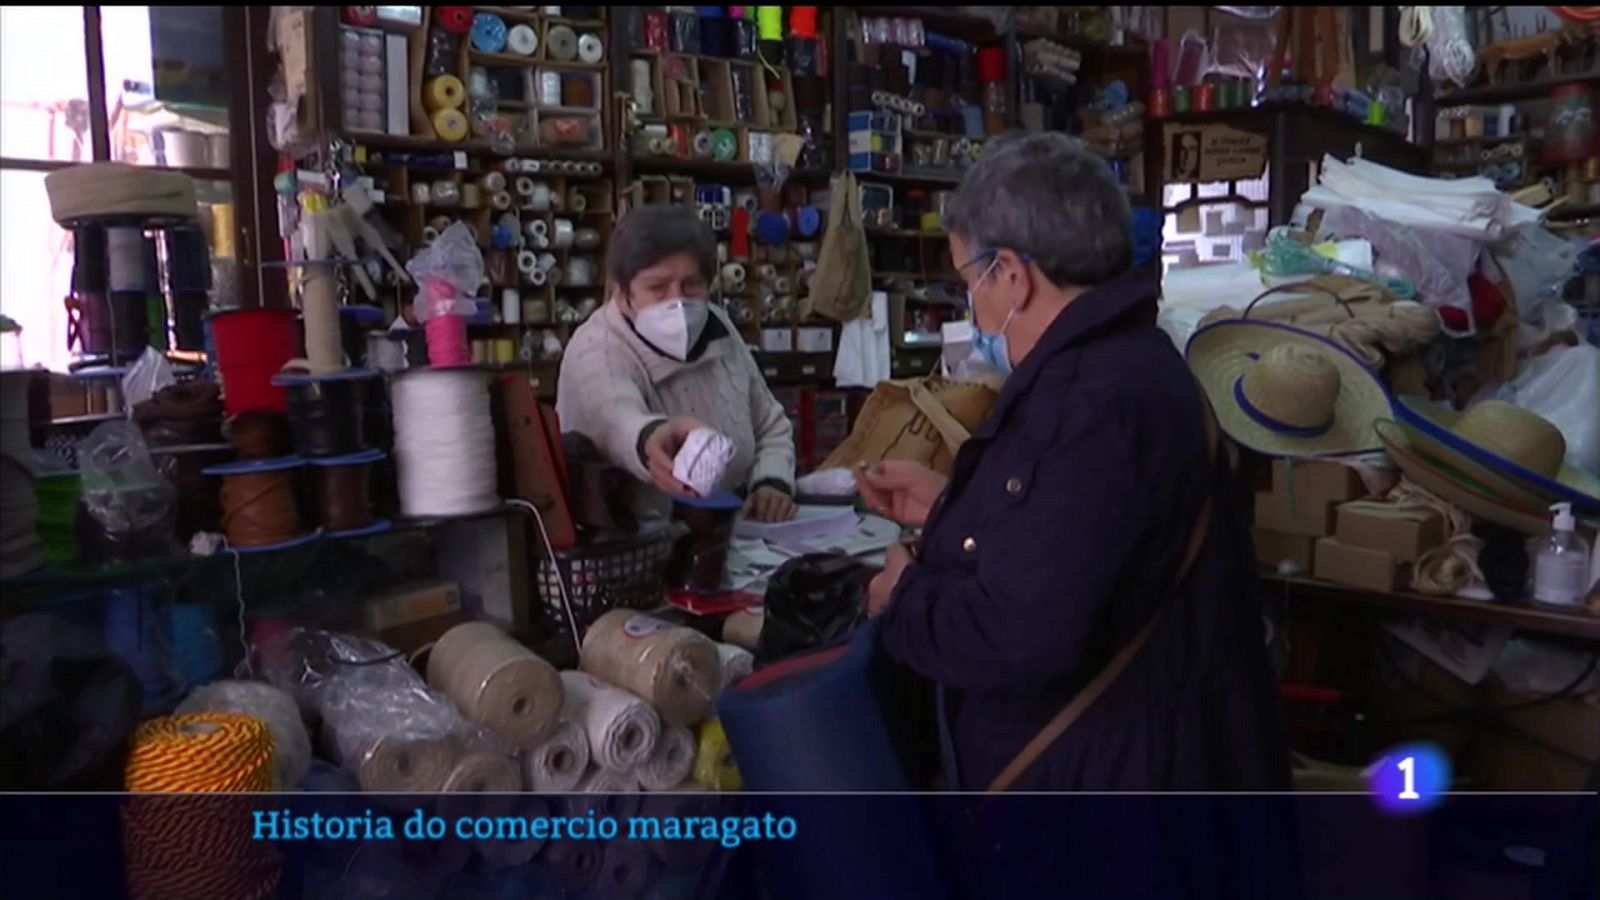 Maragatos en Galicia: unha páxina de internet estuda a historia deses leoneses no comercio galego